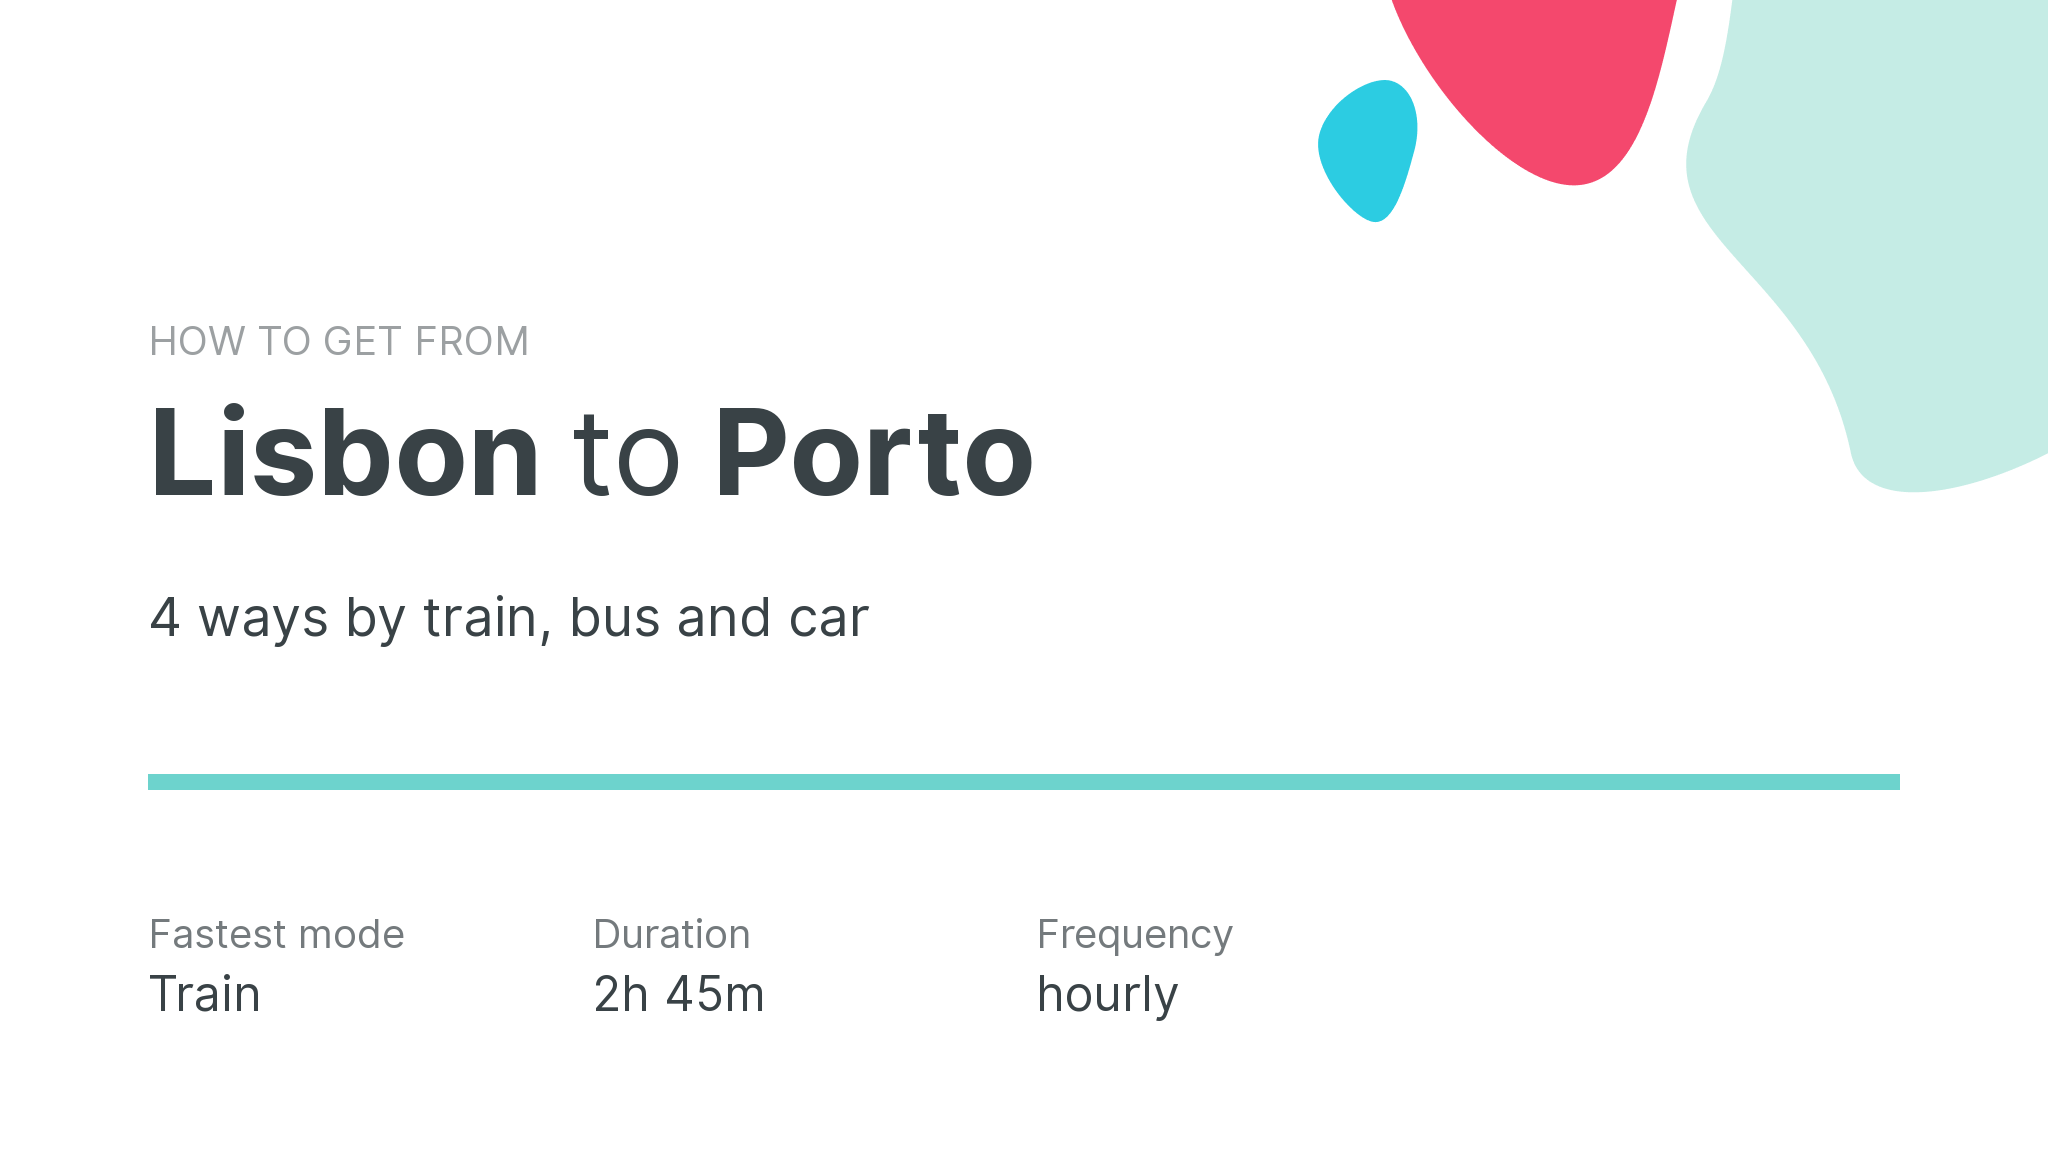 How do I get from Lisbon to Porto